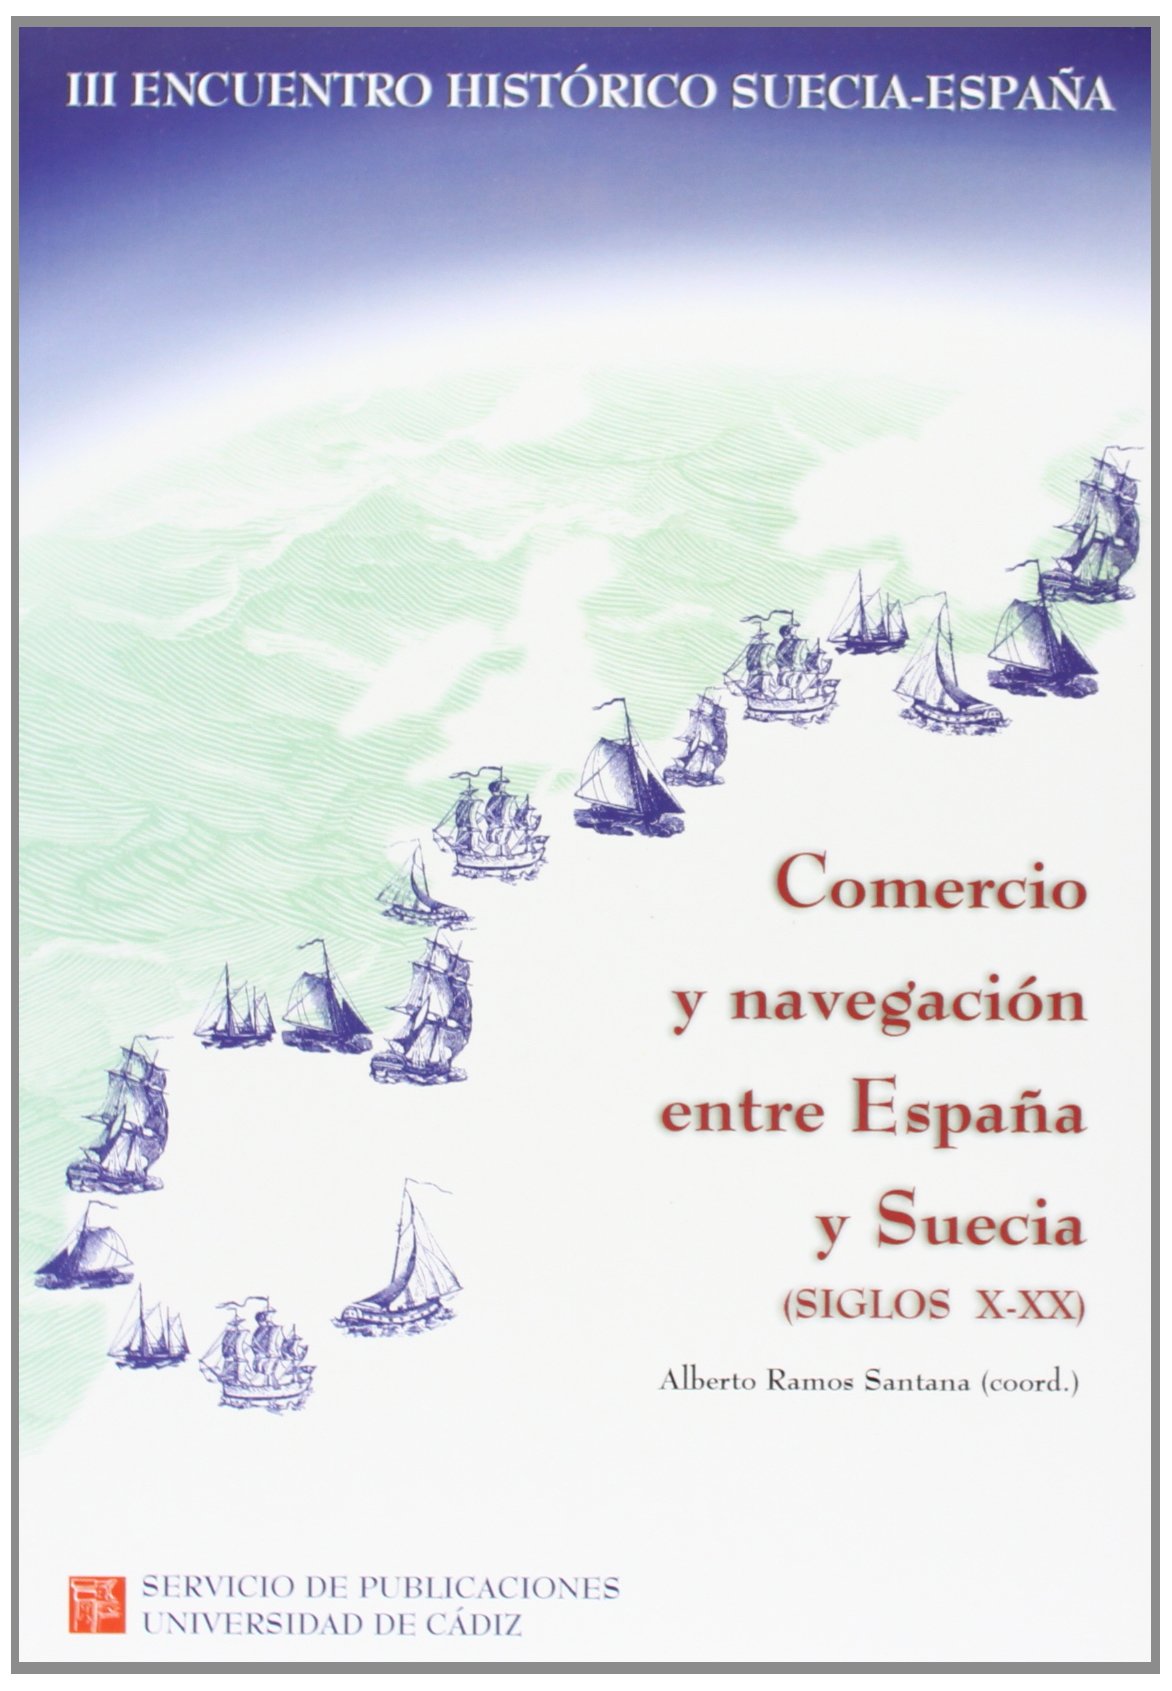 III ENCUENTRO HISTÓRICO SUECÍA-ESPAÑA, COMERCIO Y NAVEGACIÓN ENTRE ESPAÑA Y SUECIA (SIGLOS X-XX), CÁDIZ, 2, 3 Y 4 DE DICIEMBRE DE 1998